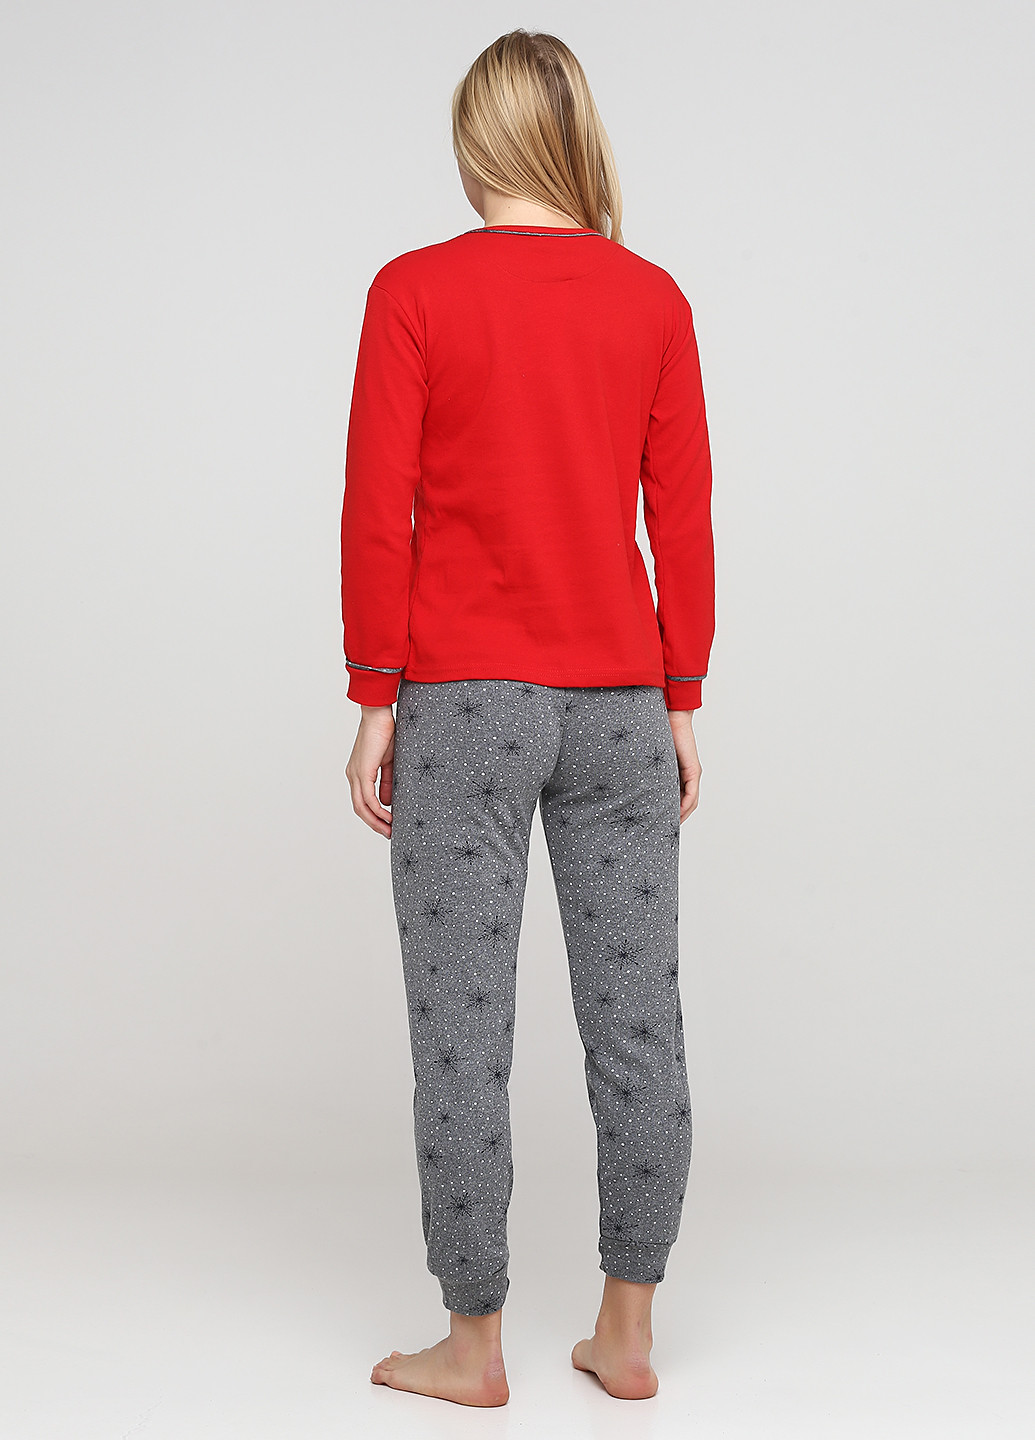 Красная всесезон пижама (лонгслив, брюки) лонгслив + брюки Fawn